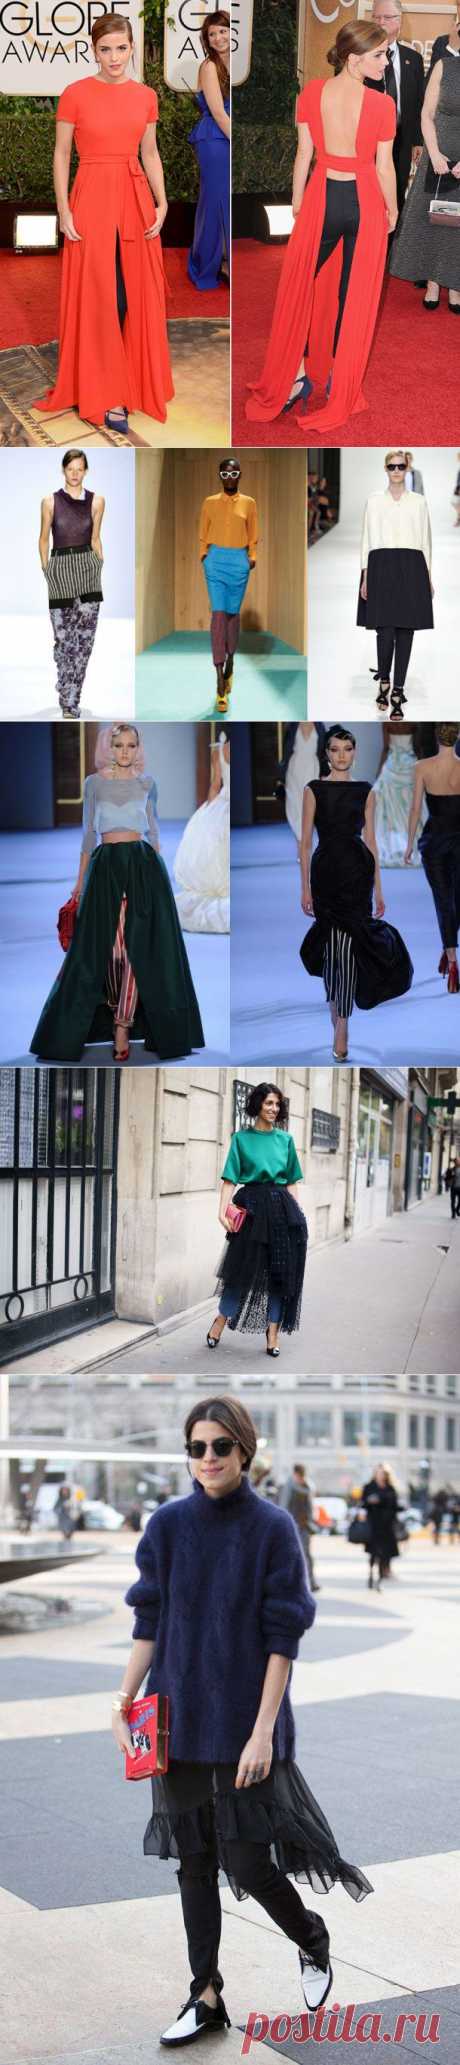 Модный совет: юбка с брюками / Все для женщины